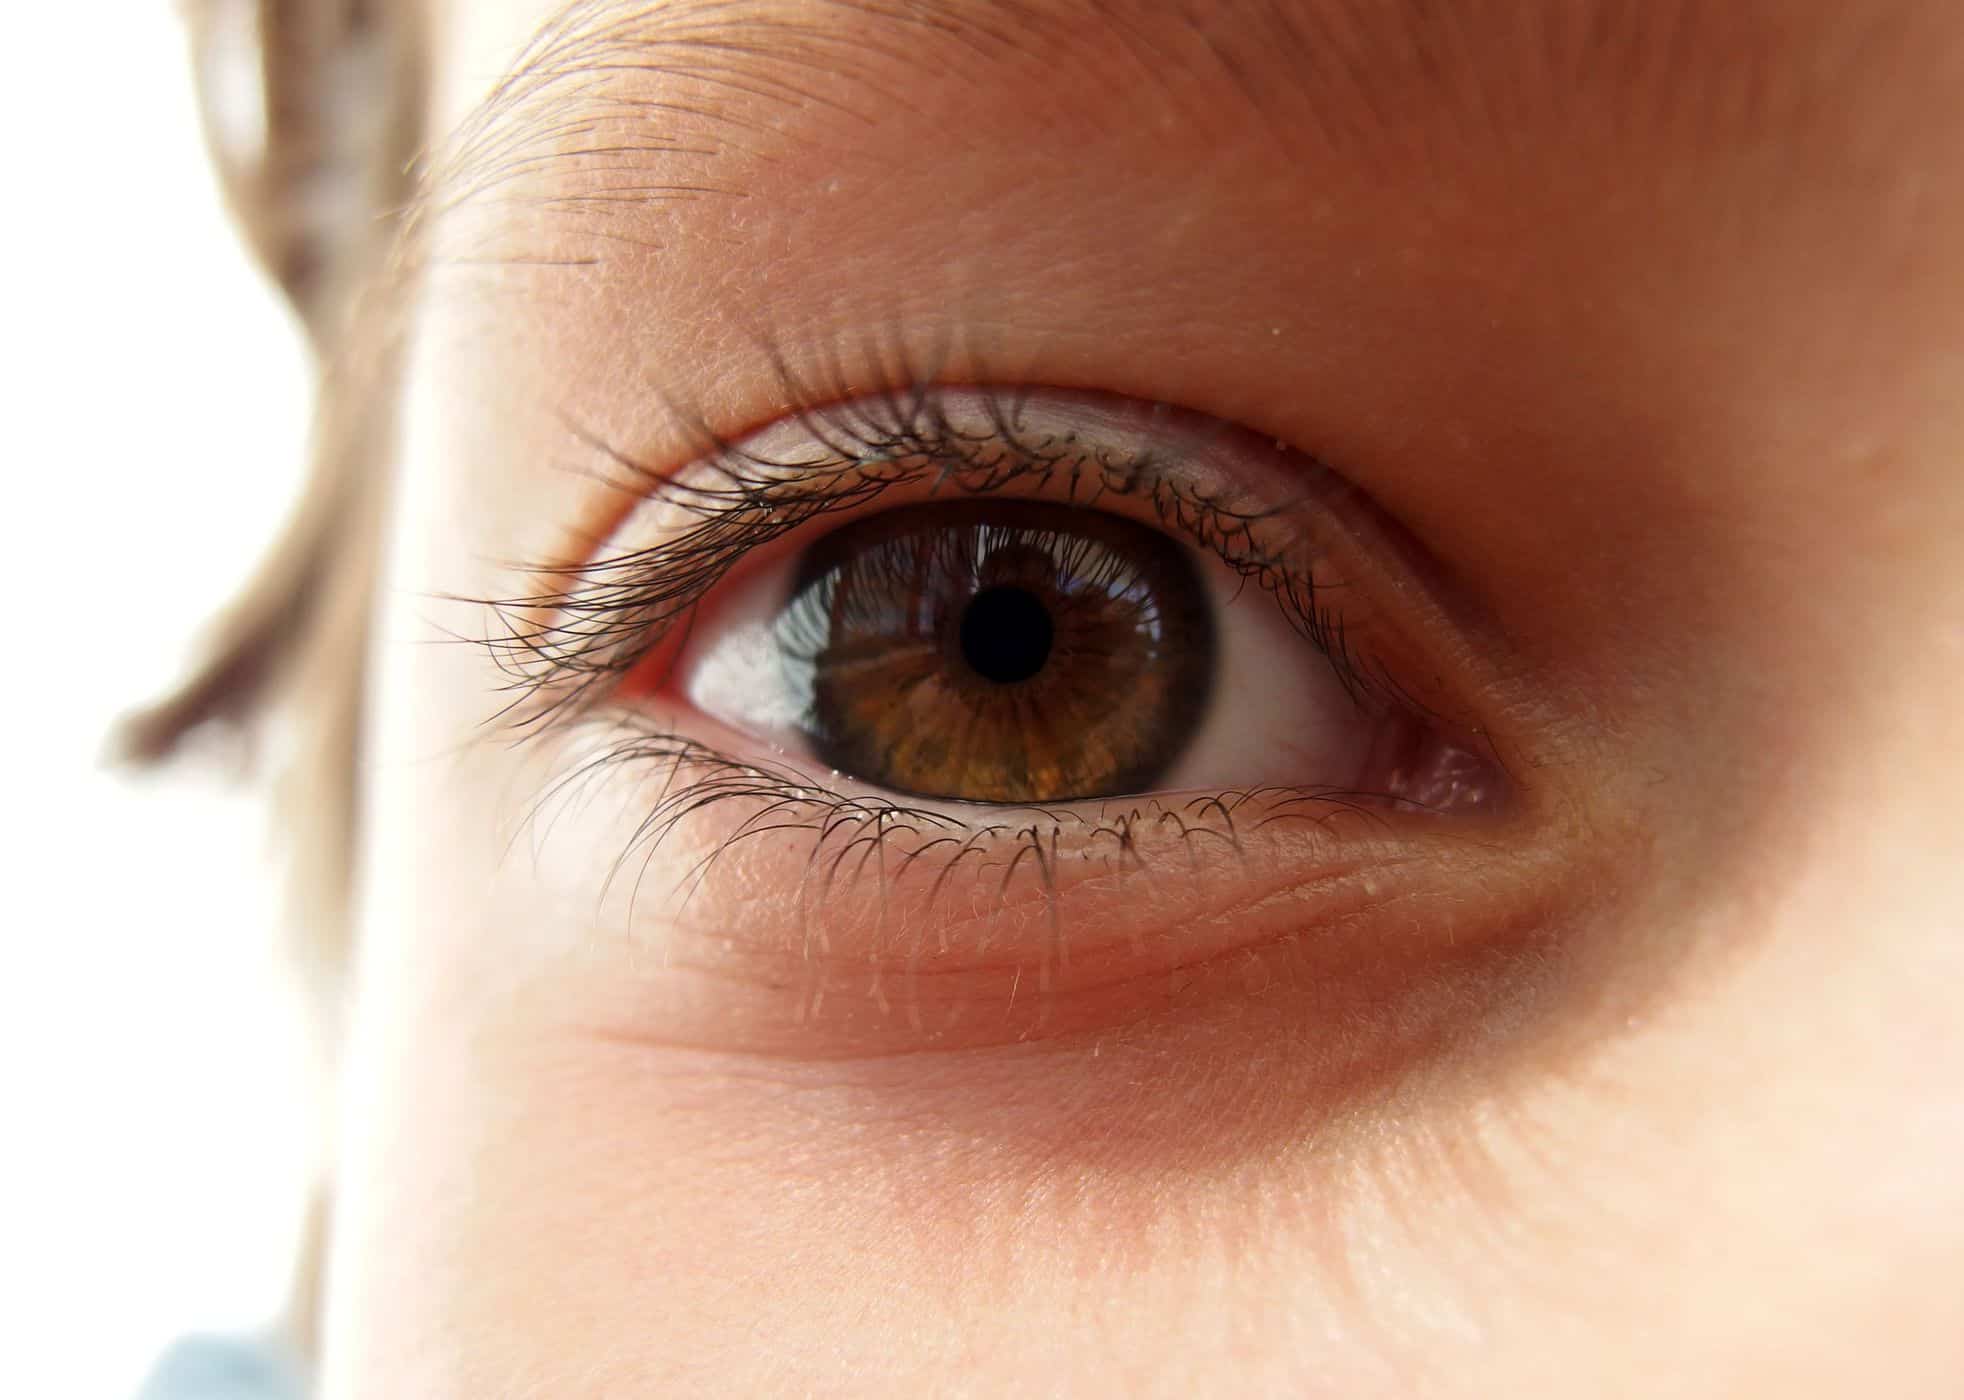 מדריך לטיפוח עיניים לאחר ניתוח לאסיק